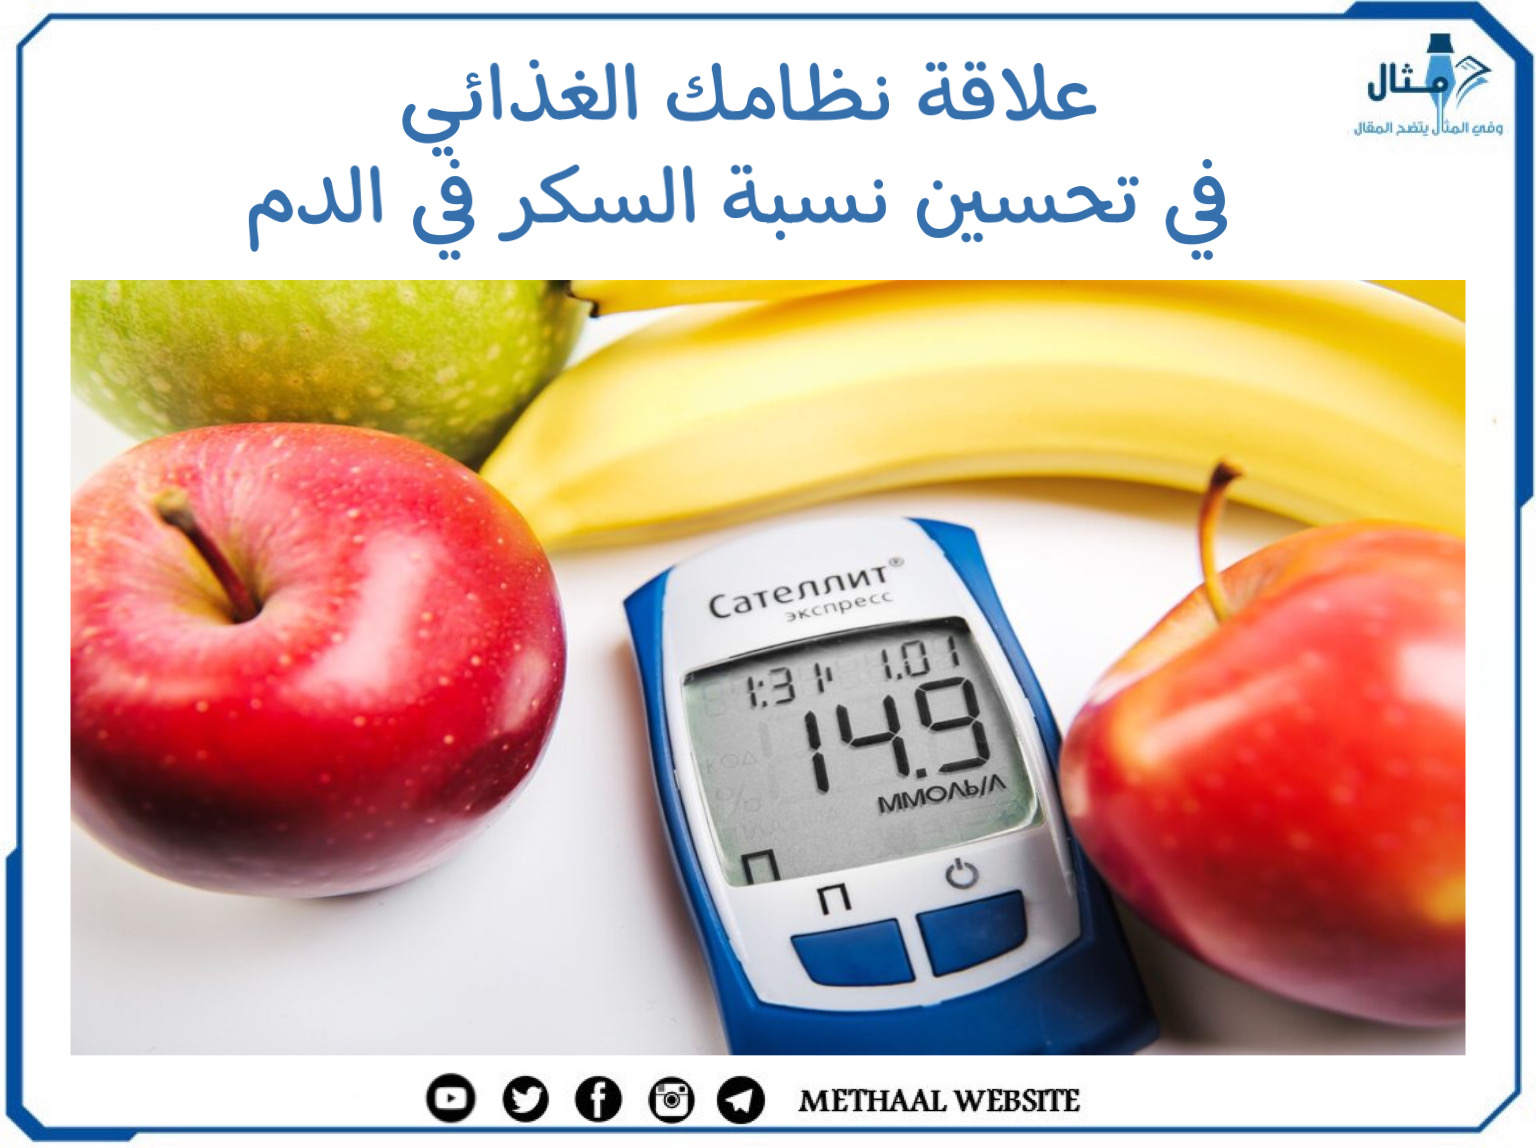 علاقة نظامك الغذائي في تحسين نسبة السكر في الدم